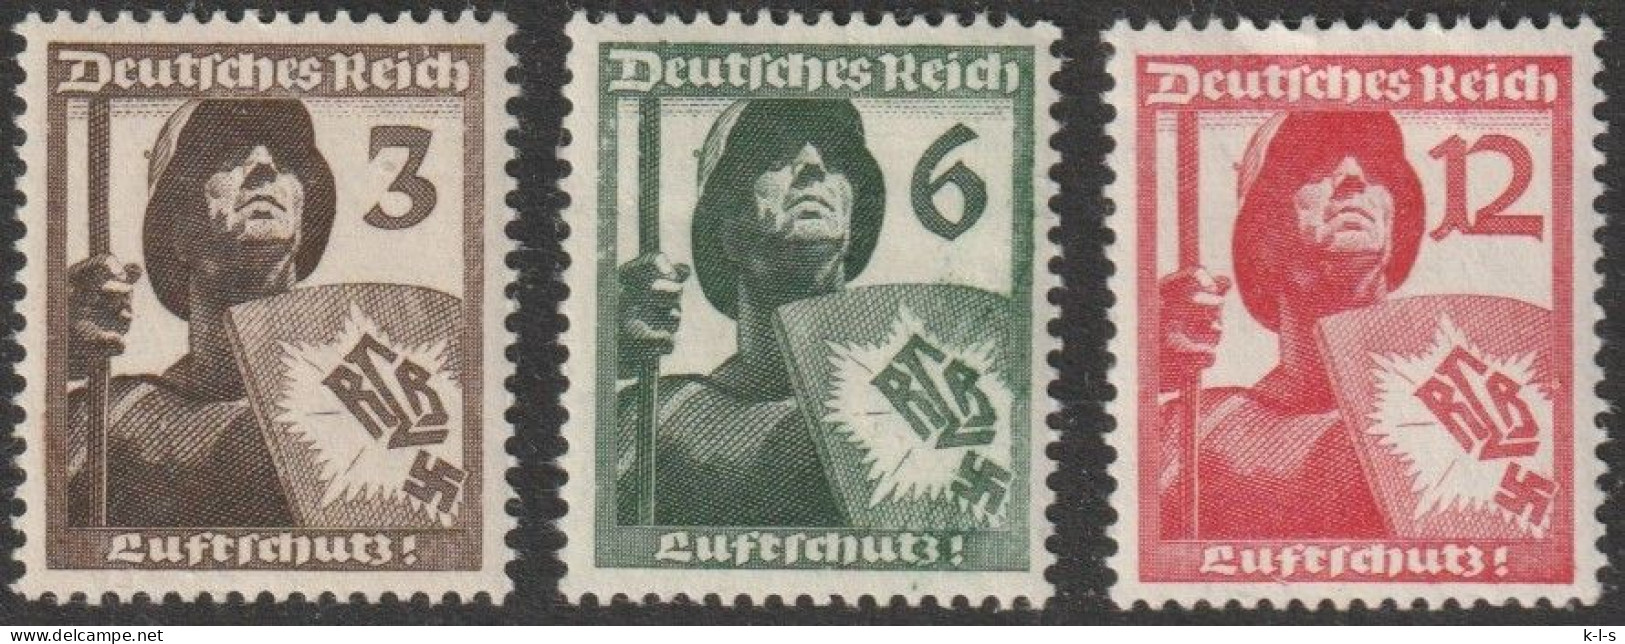 Deut. Reich: 1937, Mi. Nr. 643-45, Luftschutz.  **/MNH - Unused Stamps